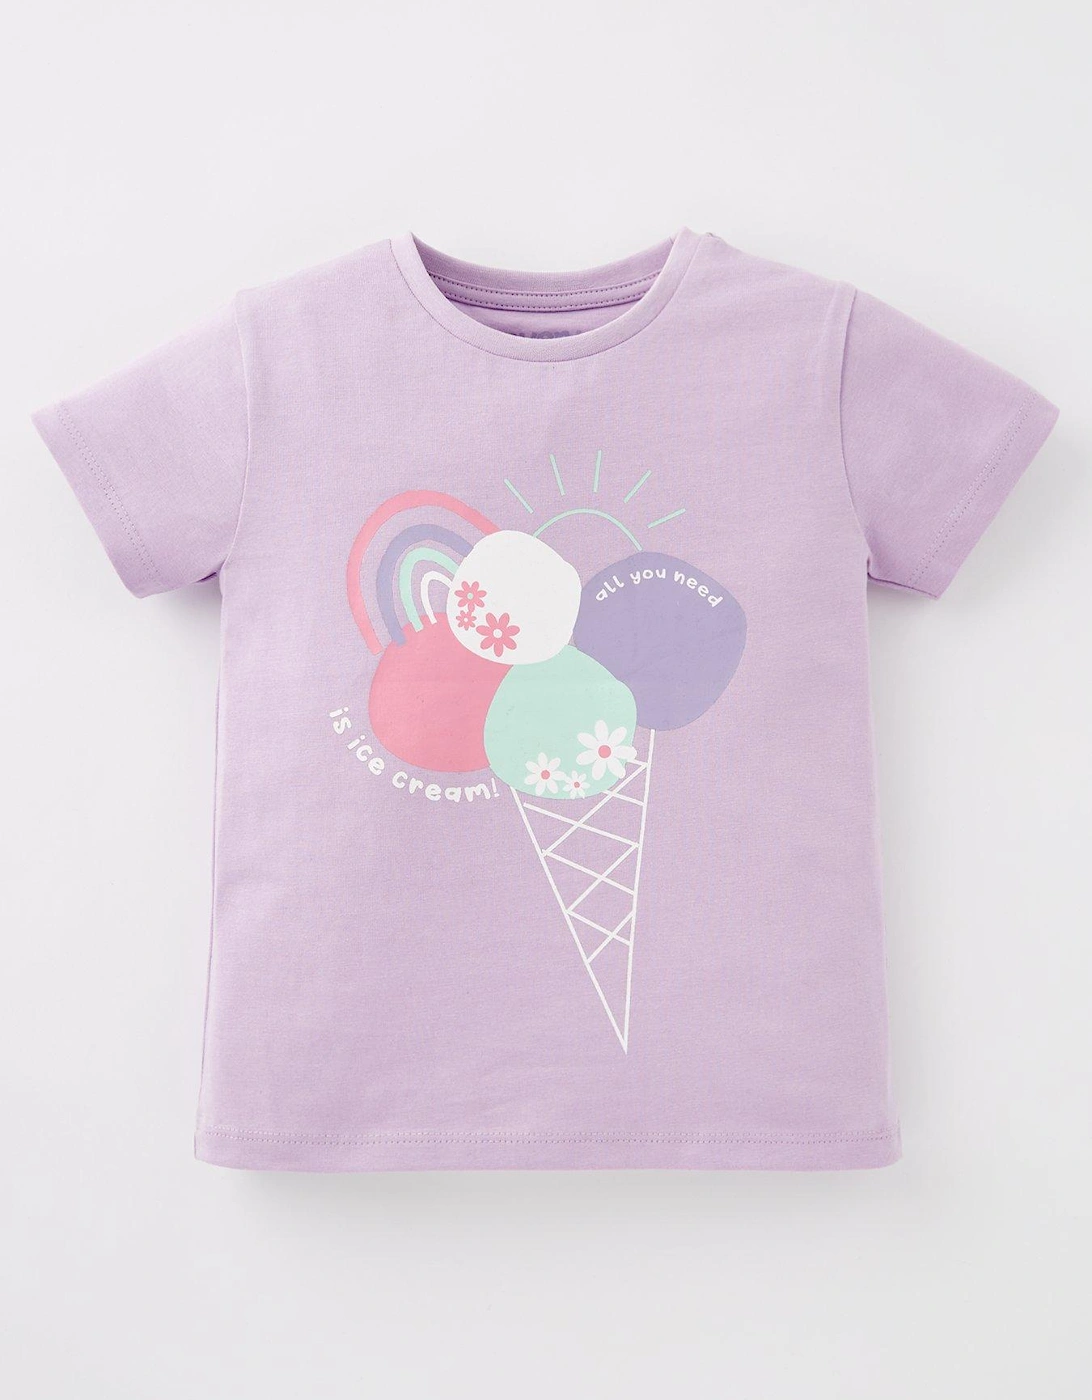 Girls Short Sleeve Ice Cream T-shirt, 2 of 1